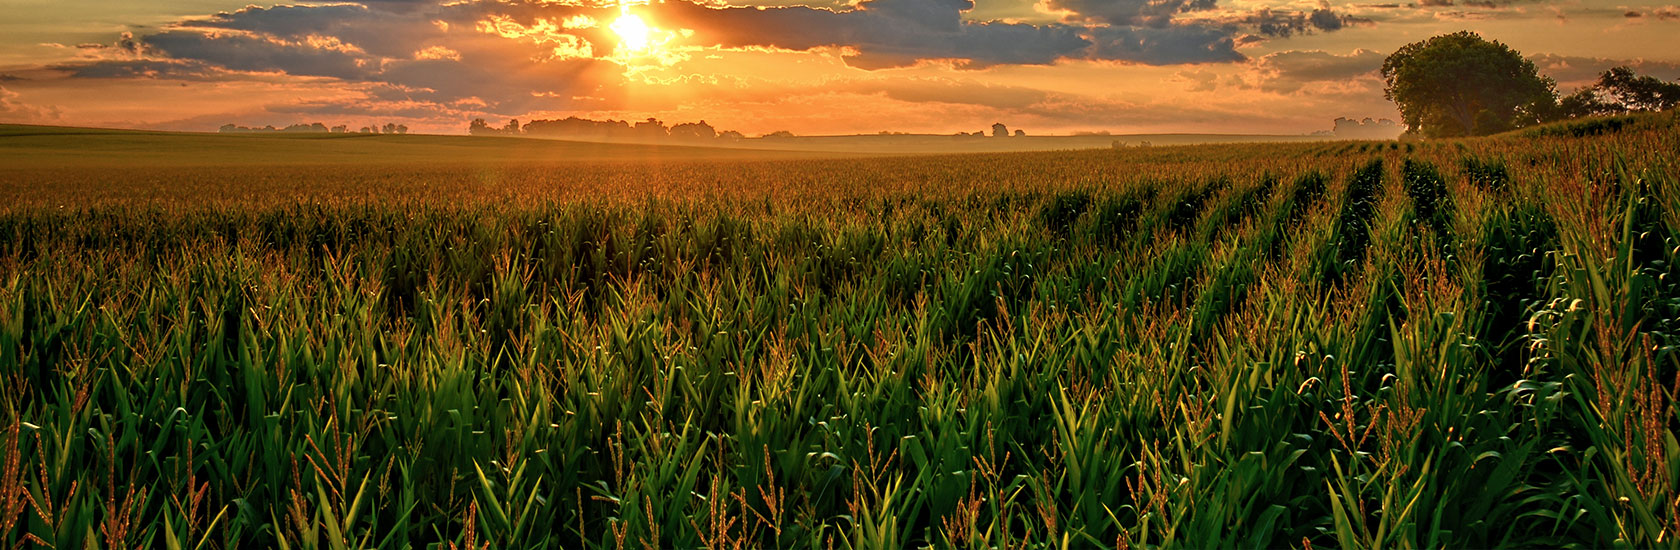 Corn fields image